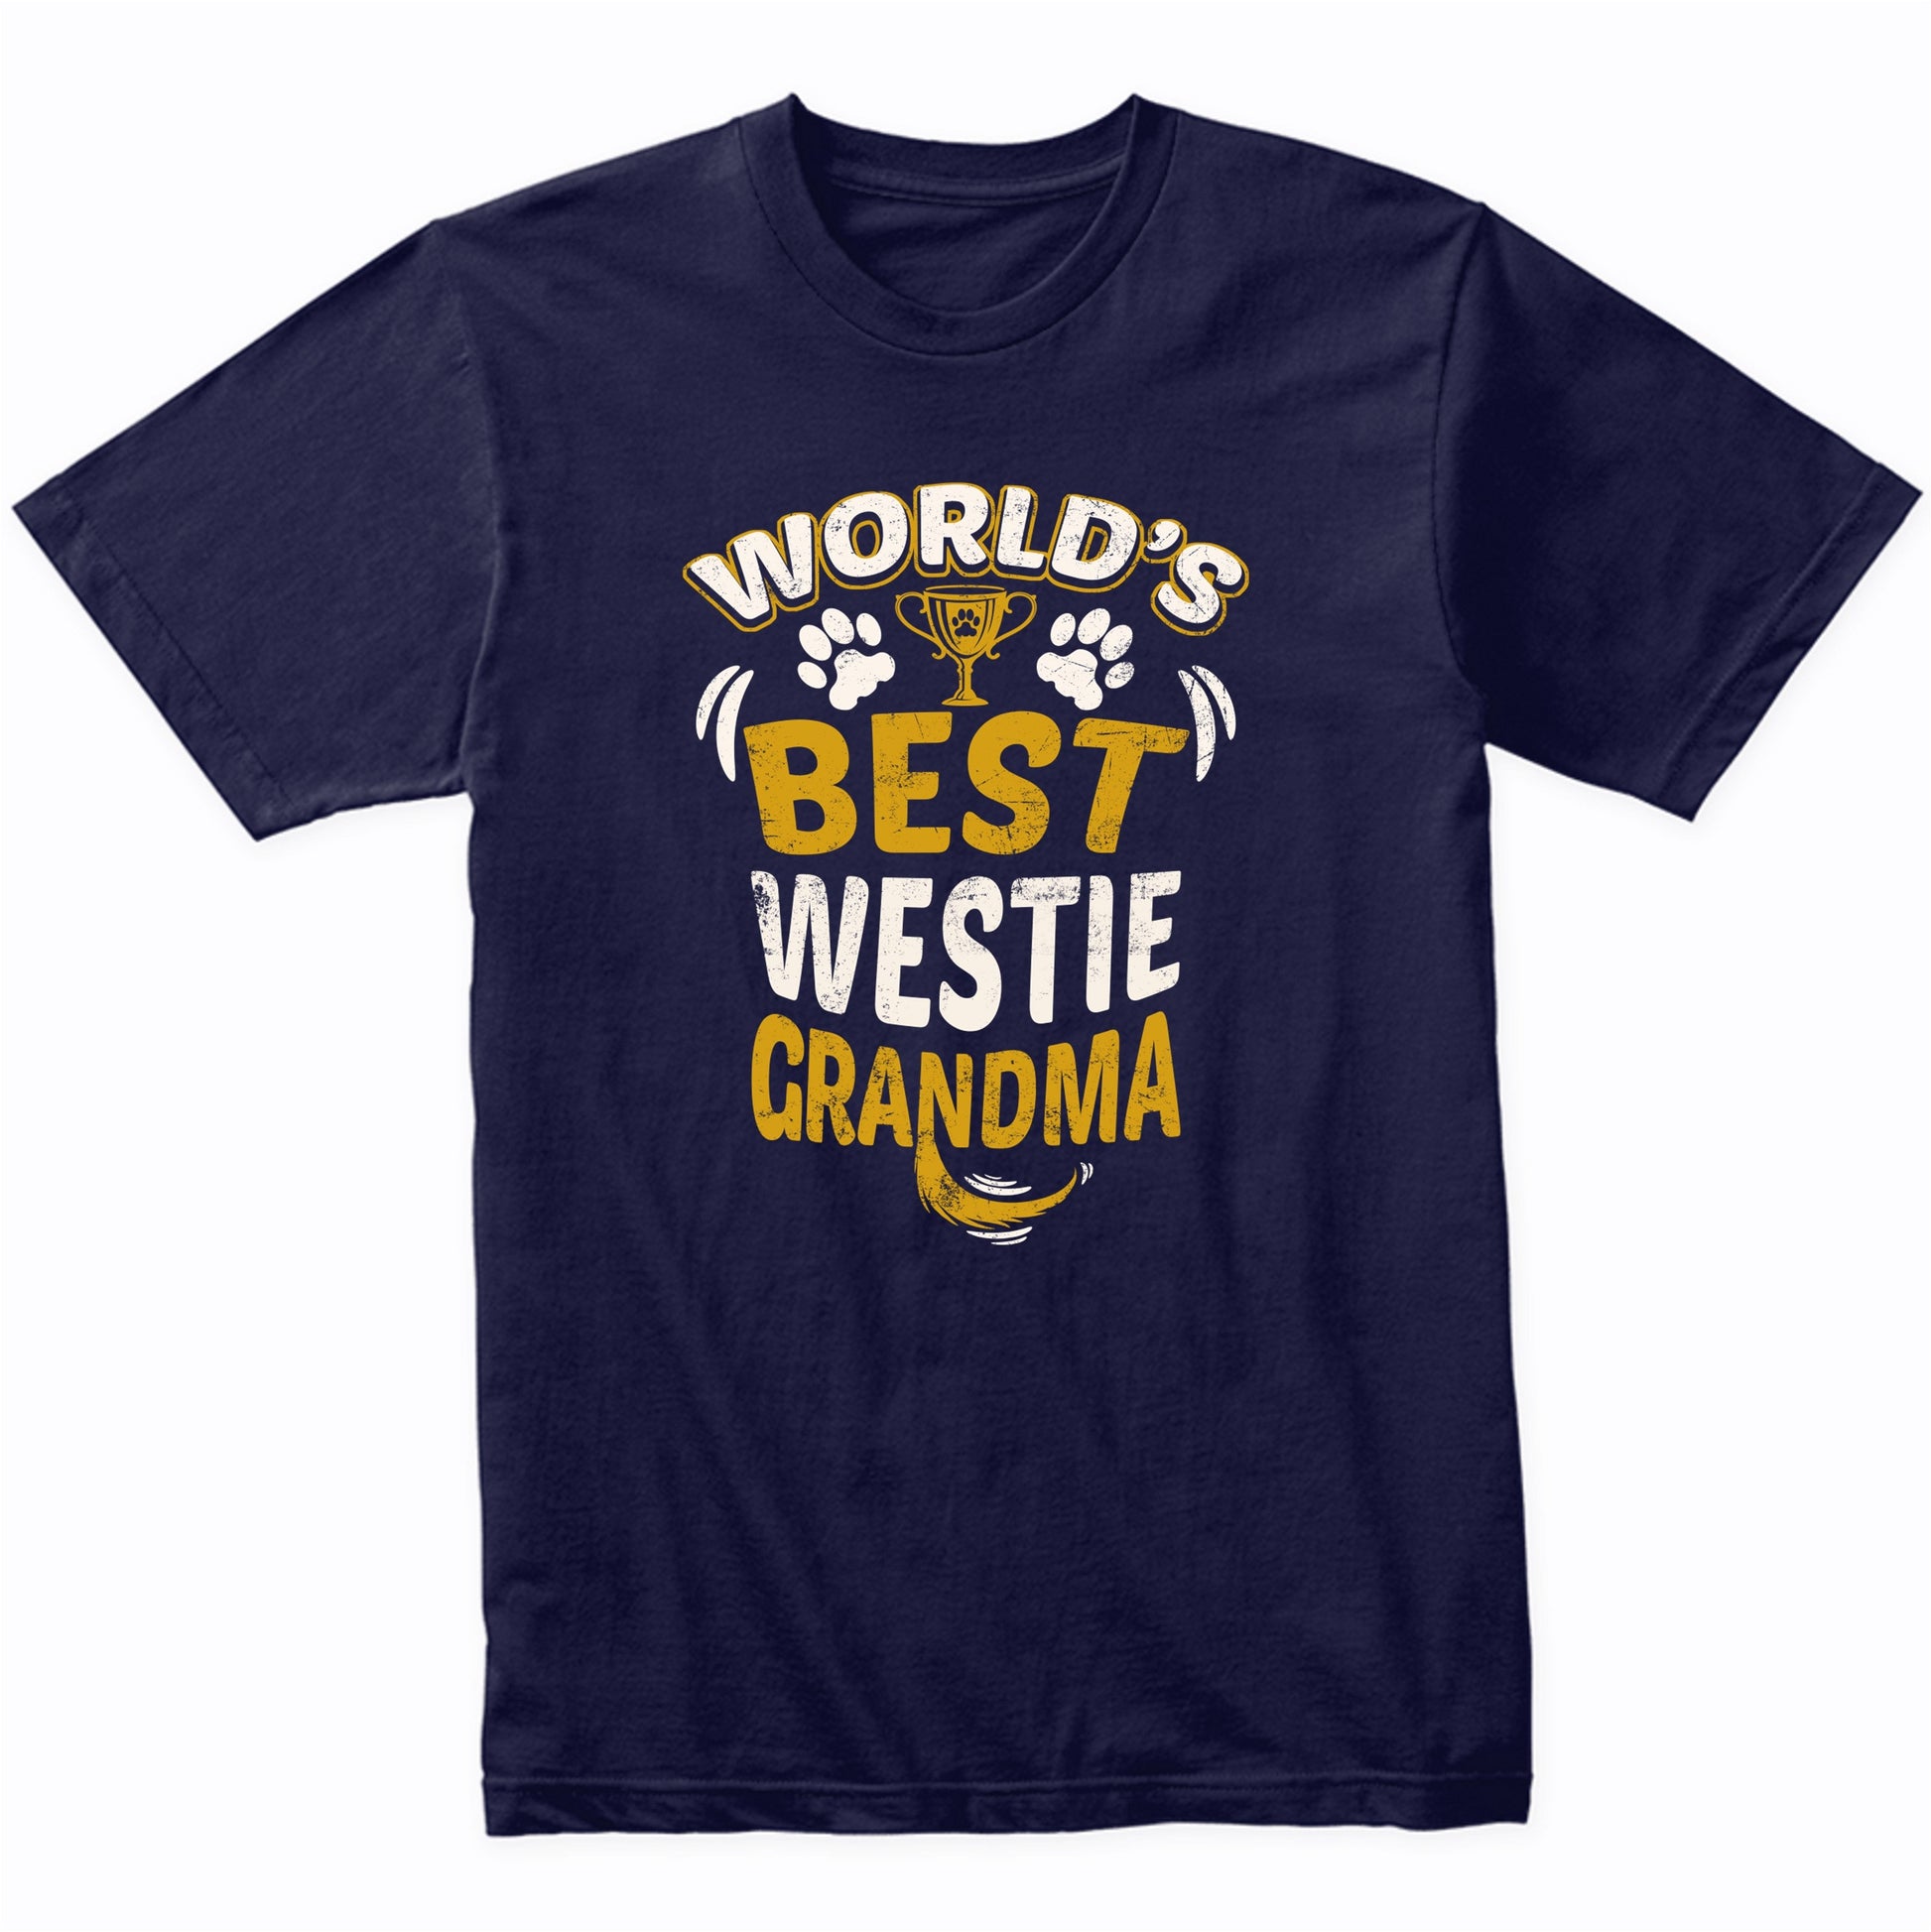 World's Best Westie Grandma Graphic T-Shirt